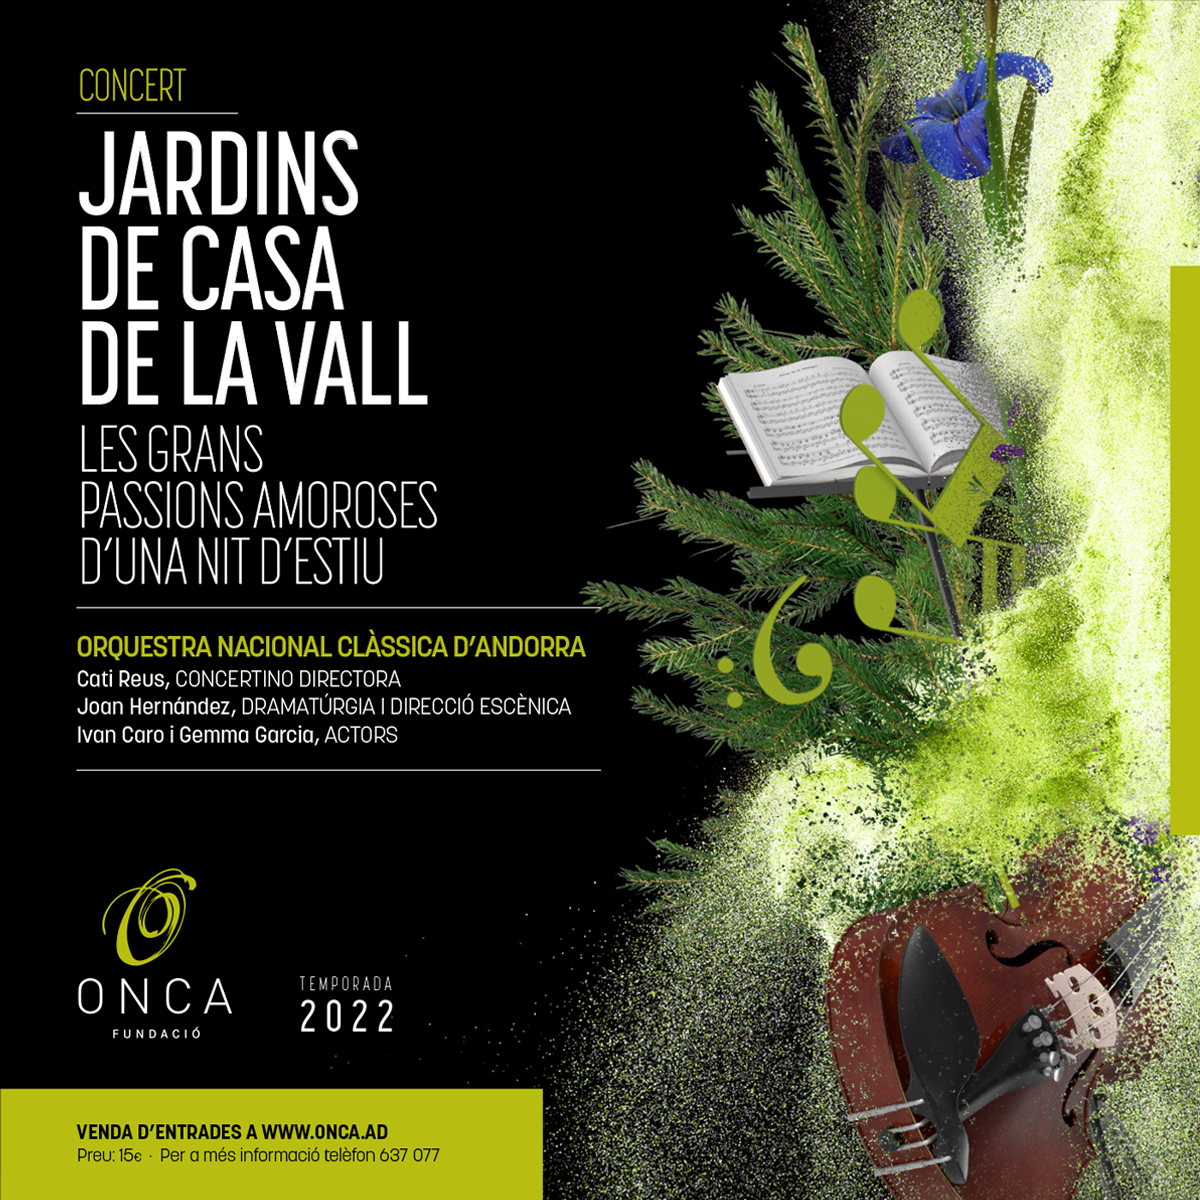 Les grans passions amoroses d’una nit d’estiu’, la nova proposta de la Fundació Orquestra Nacional Clàssica d’Andorra pel Concert Jardins de Casa de la Vall